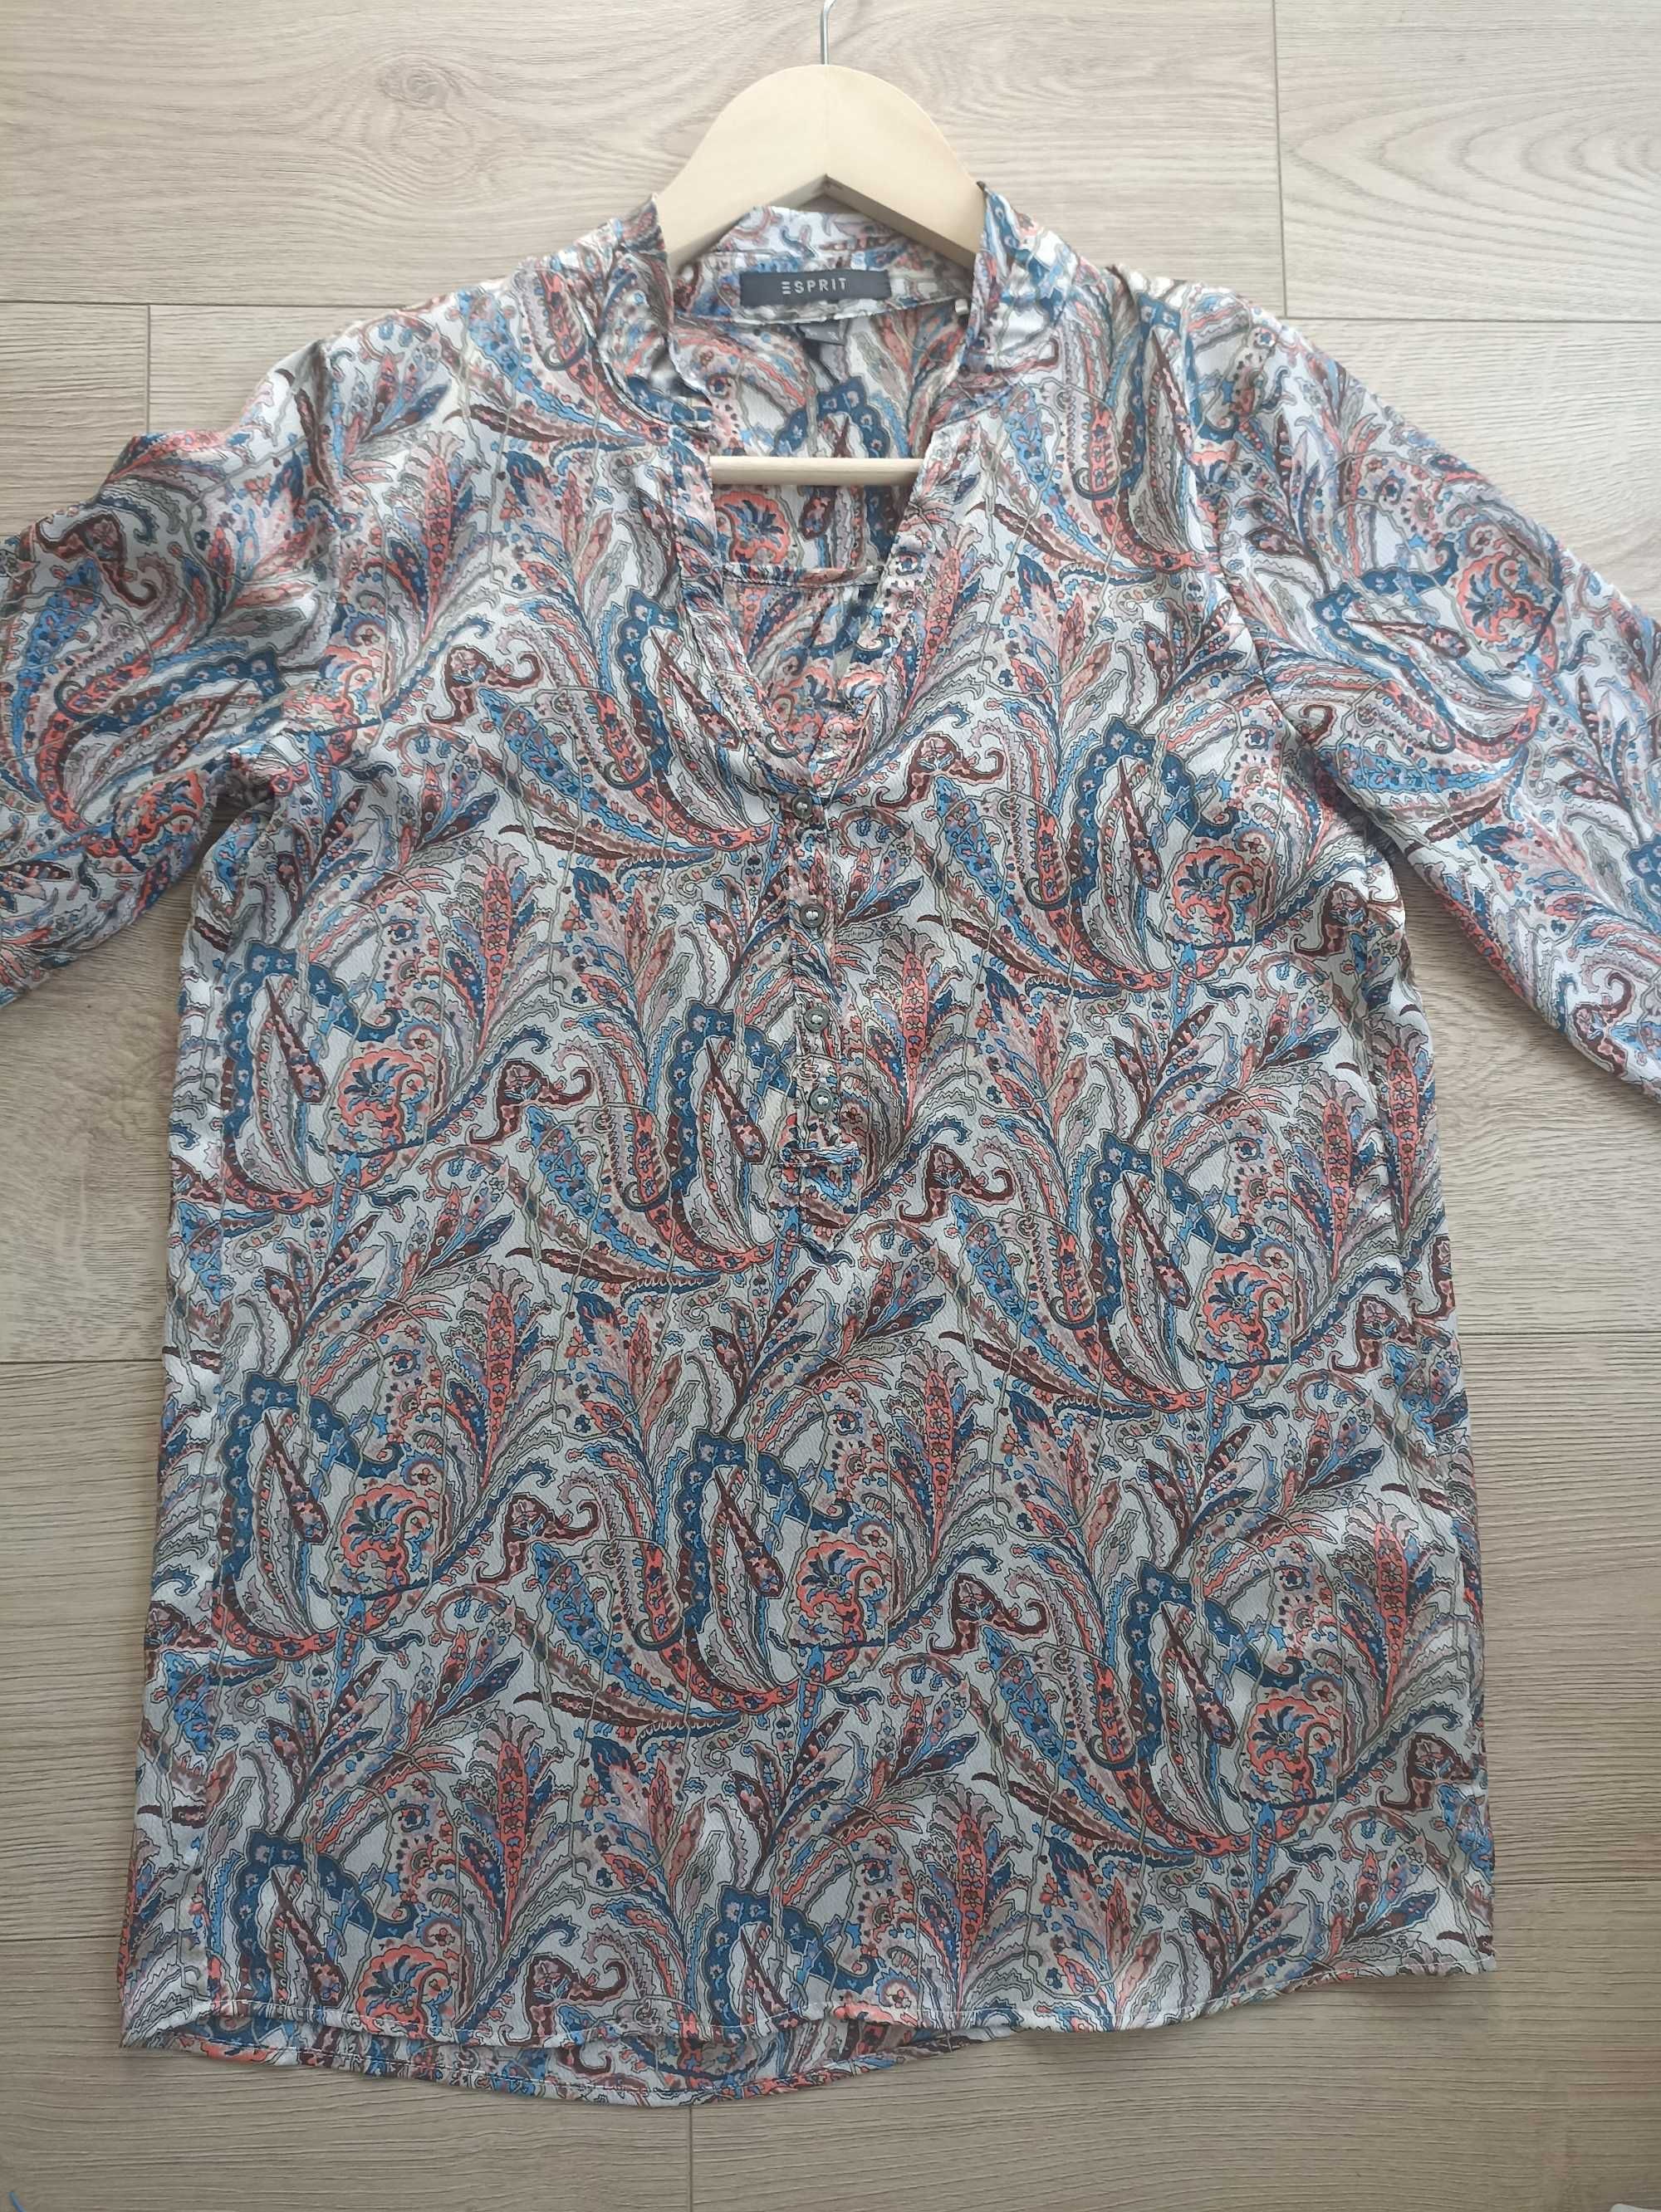 Damska bluzka, ESPRIT,  rozmiar EUR 36, UK 6, w stanie idealnym